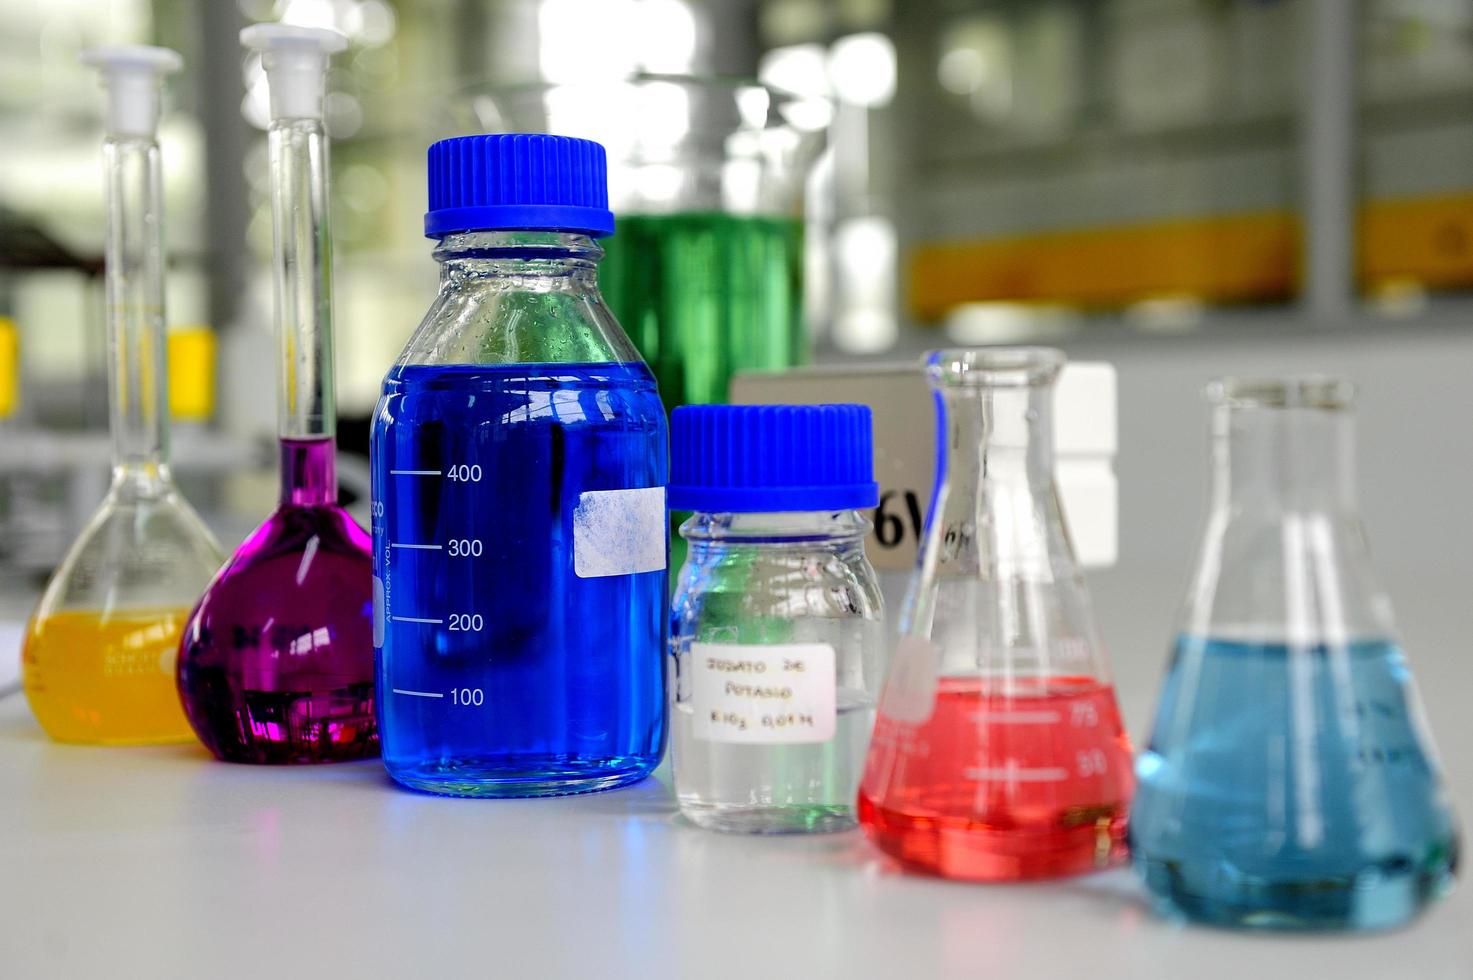 laboratorieglas som innehåller färgglad kemisk vätska foto